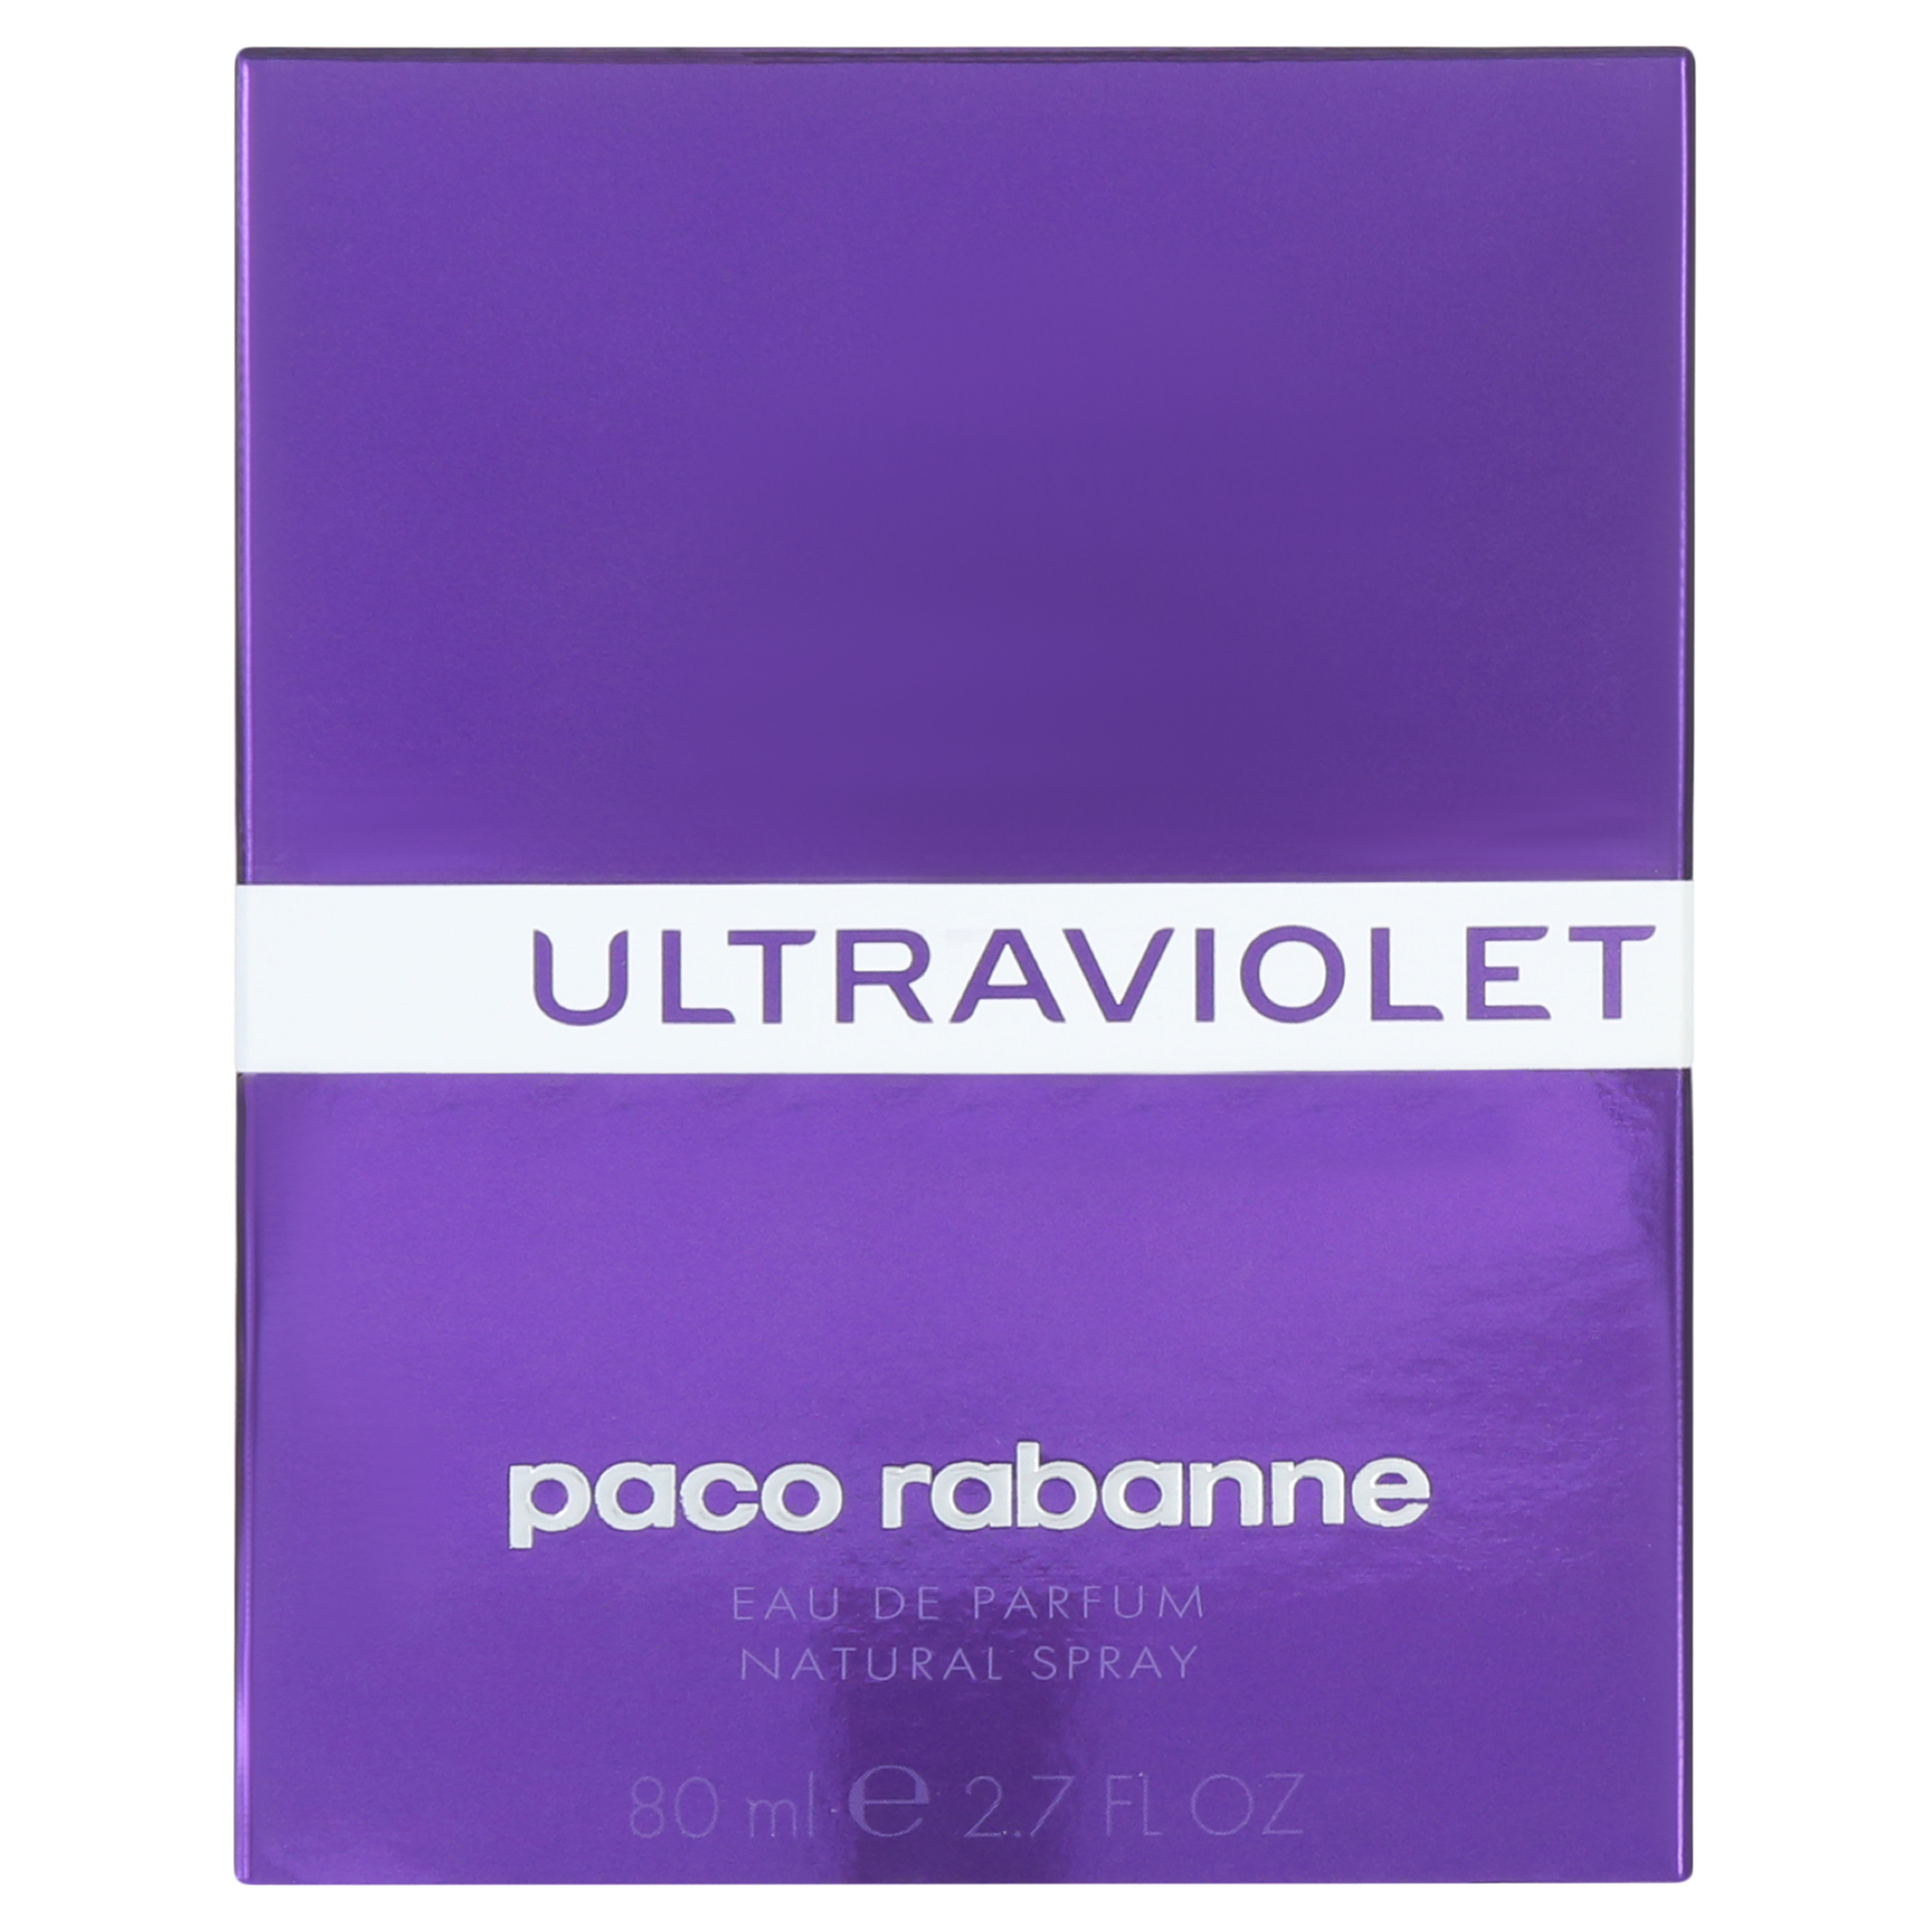 Paco Rabanne ULTRAVIOLET Eau De Parfum Spray for Women 2.7 oz - image 3 of 5